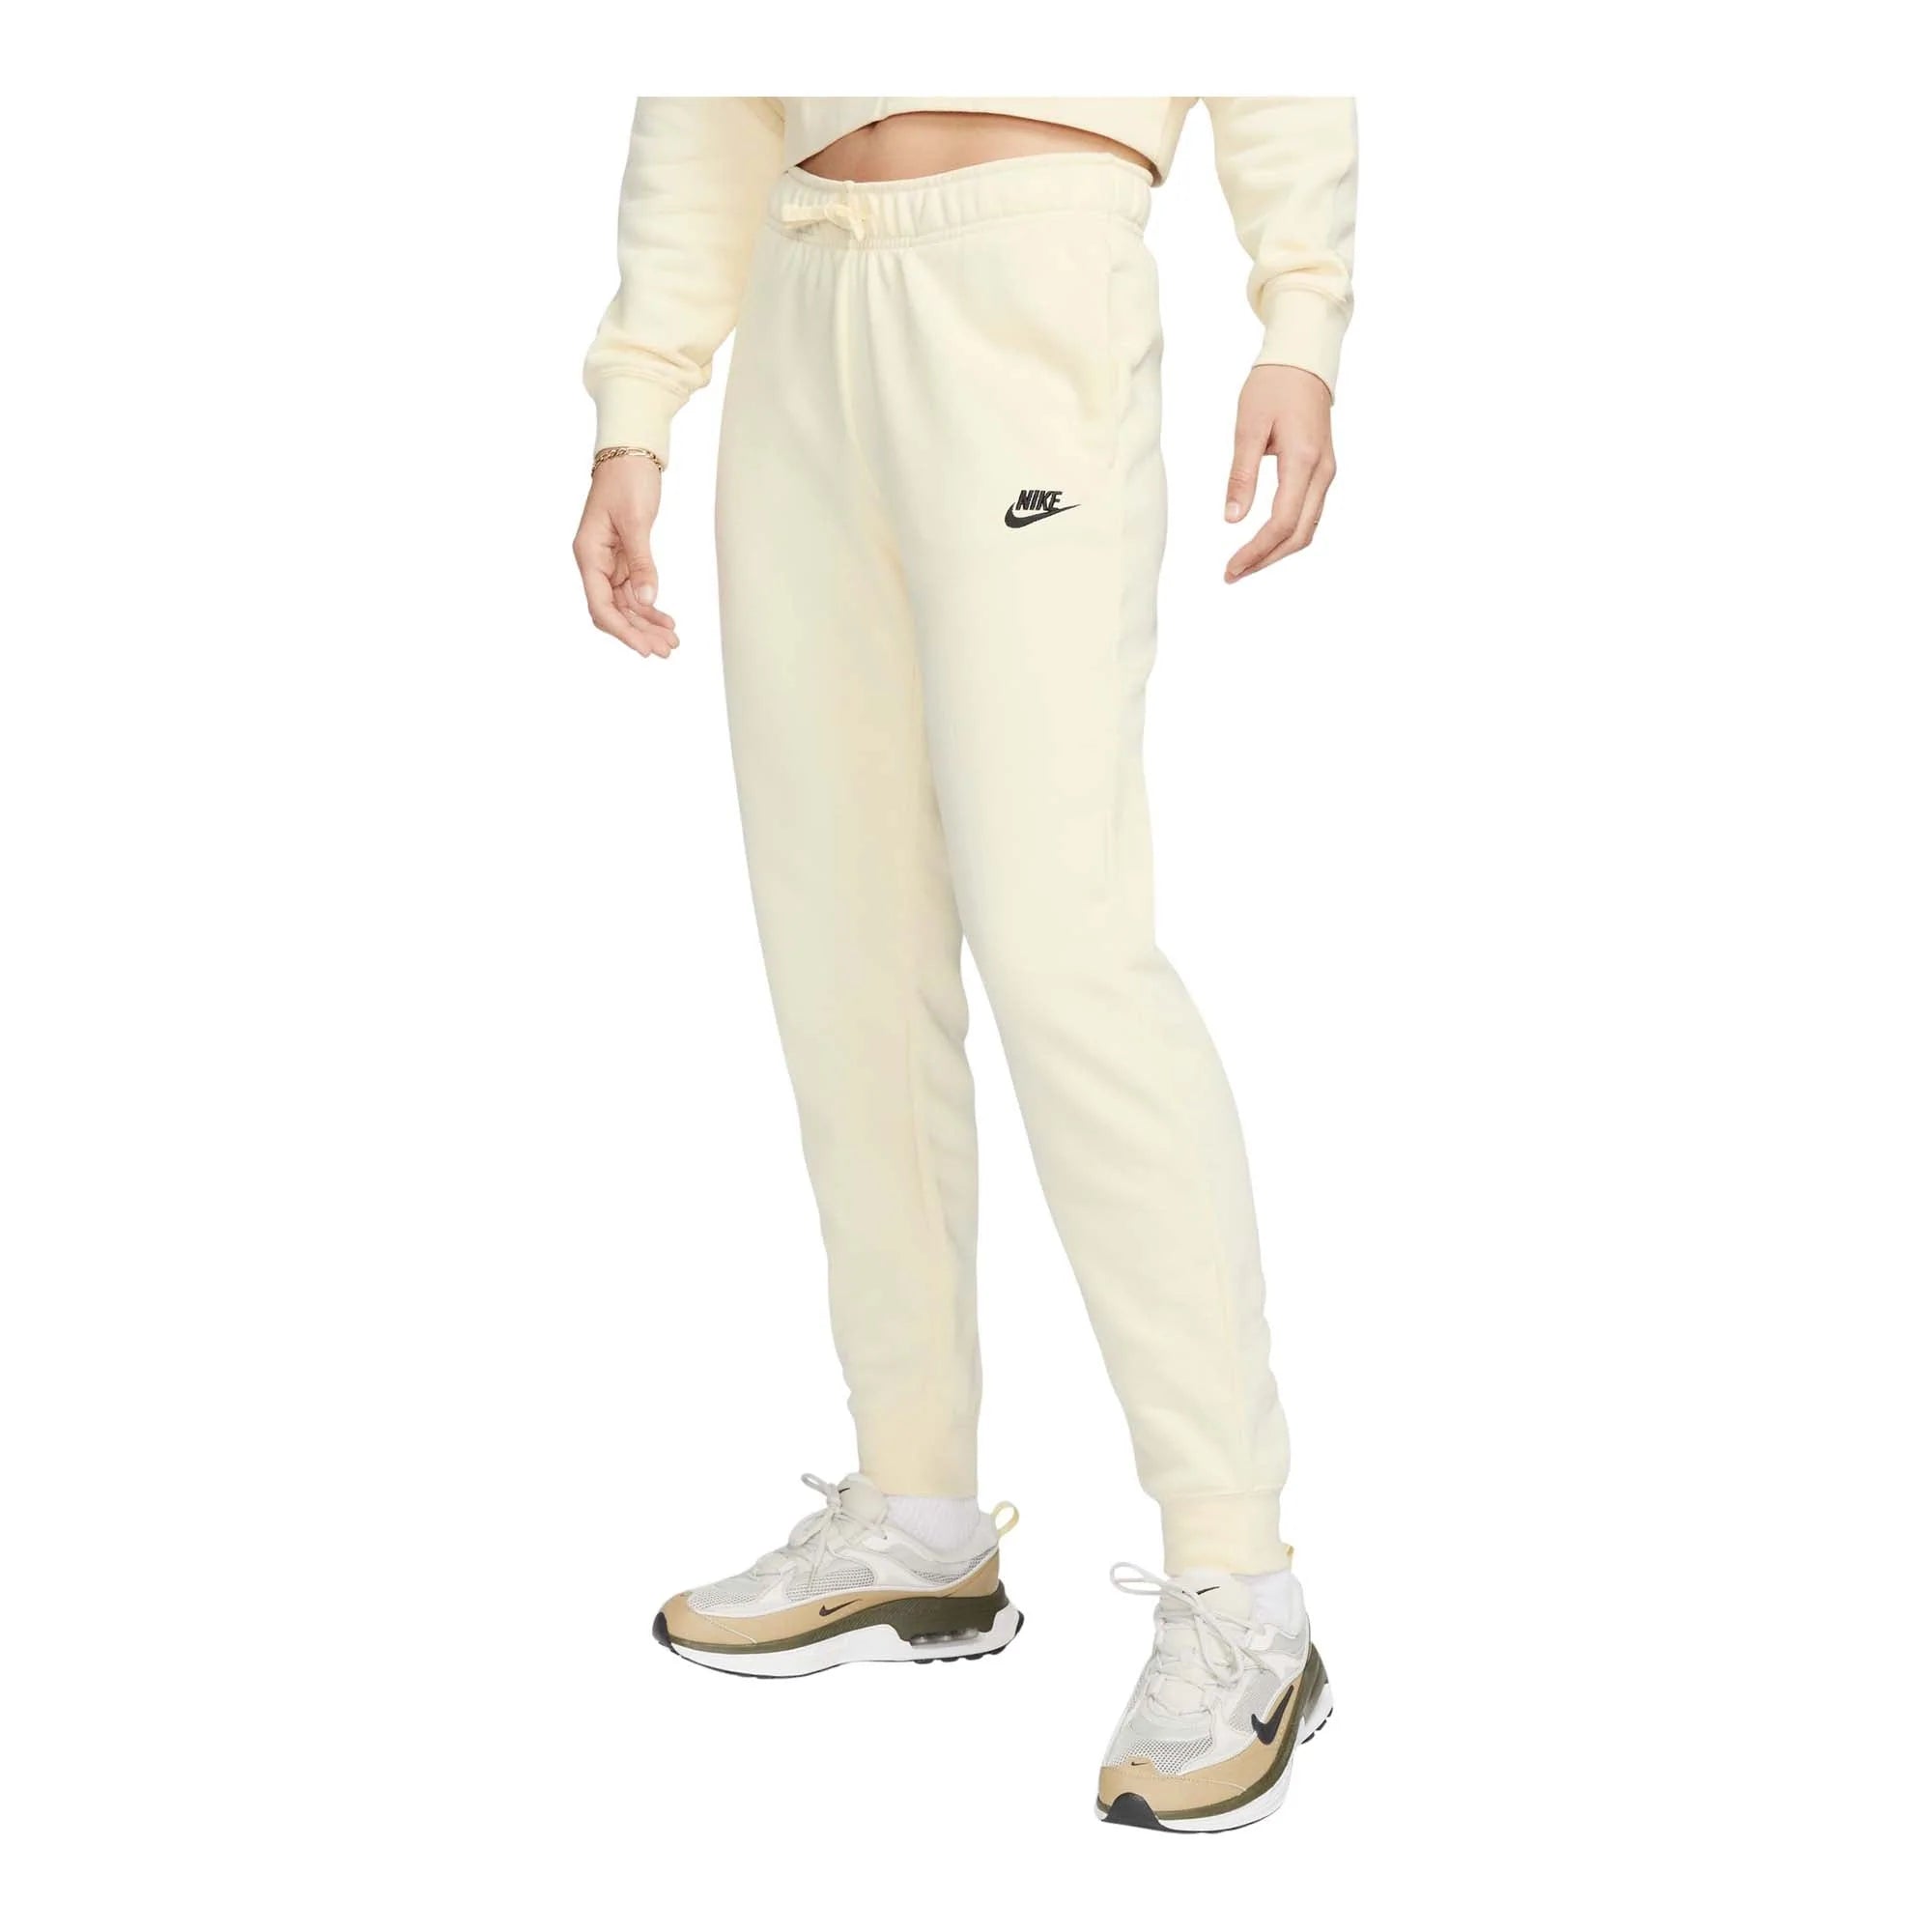 Nike Tech Fleece Pants: The Ultimate Comfort Wear